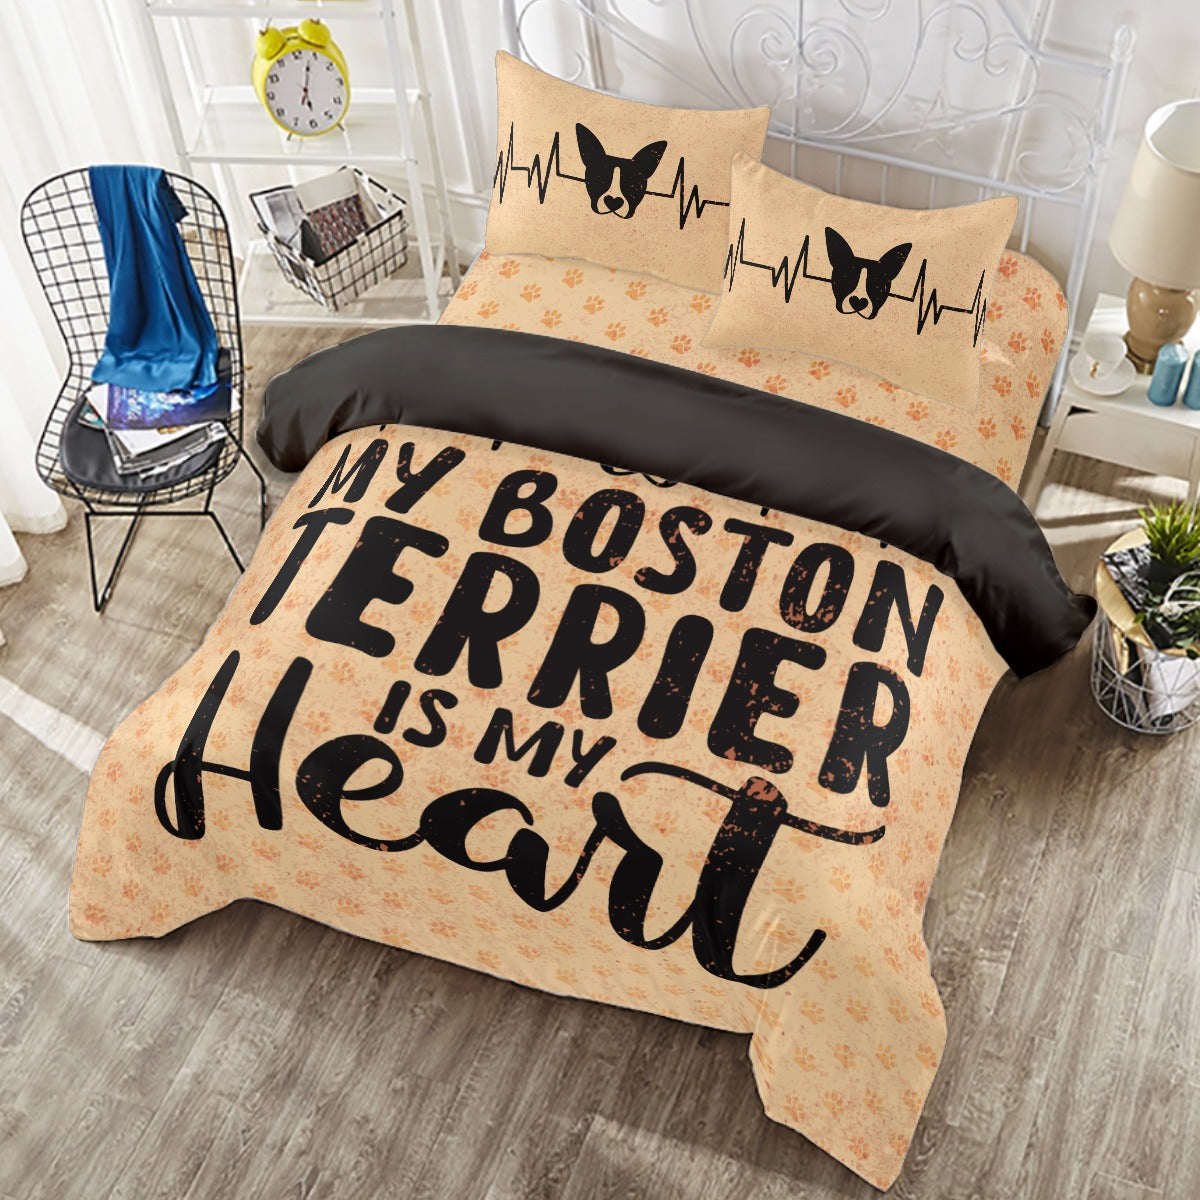 Cosmo - Duvet Cover Set for Boston Terrier lovers